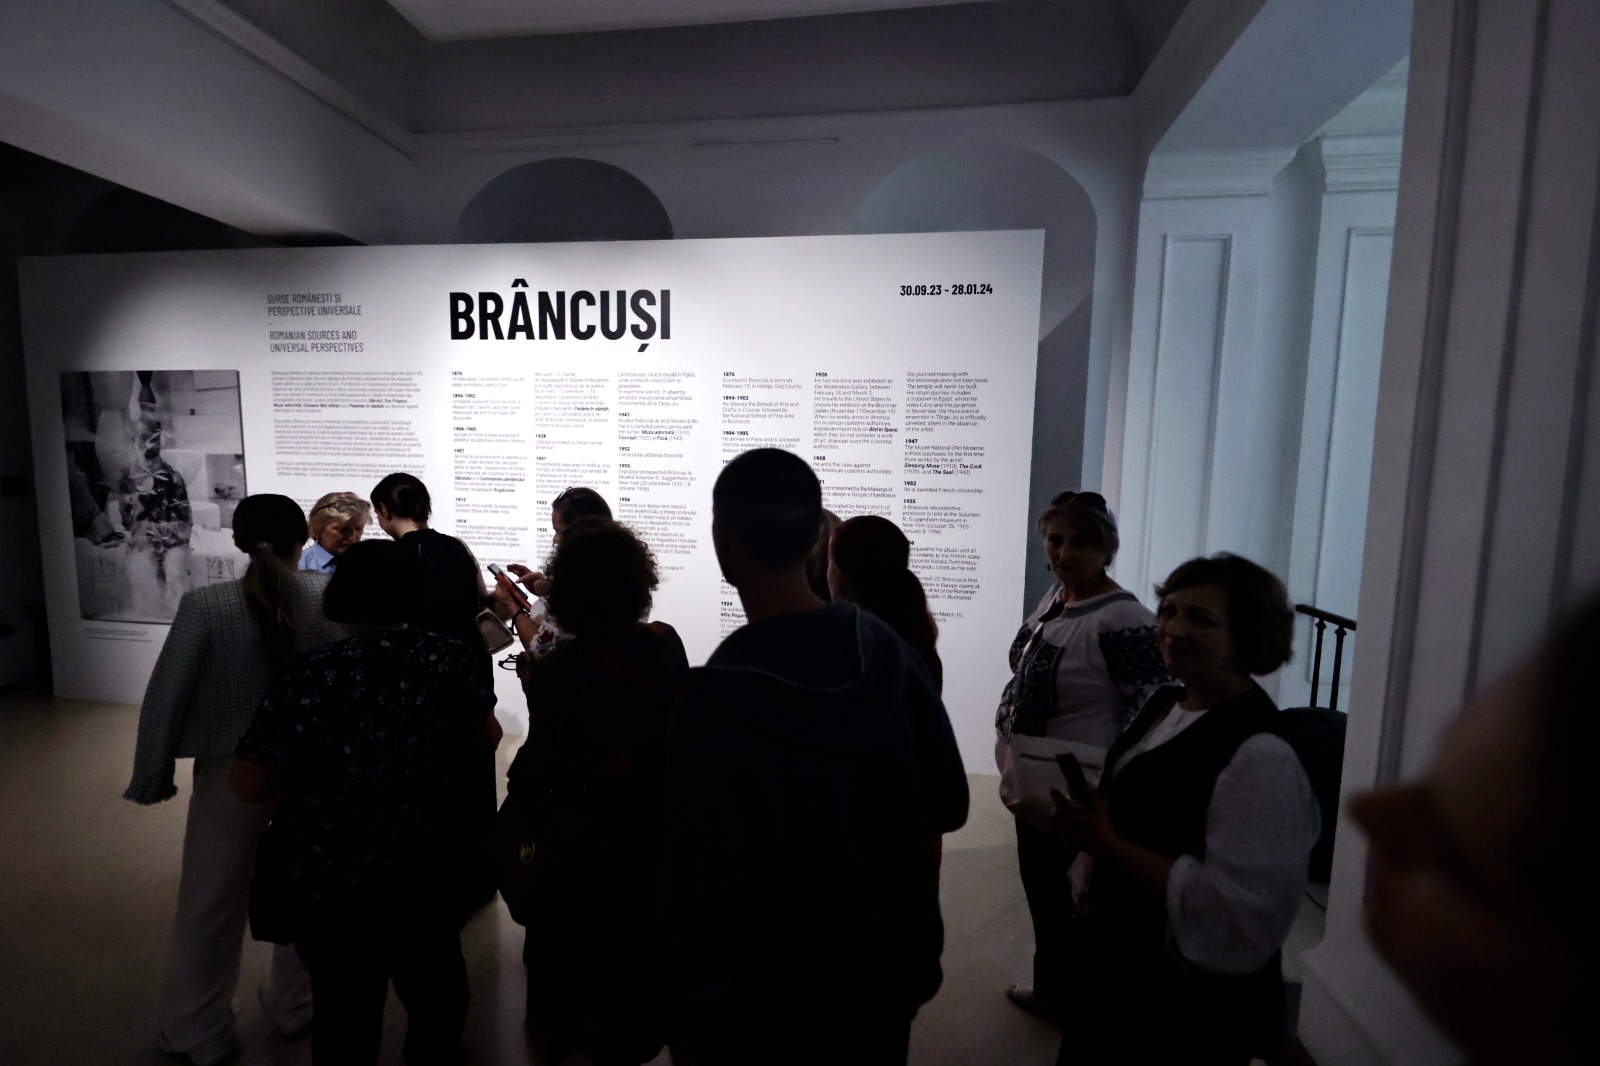 Alertă de fraudă la expoziția Brâncuși de la Timișoara. E incredibil ce au ajuns să facă oportuniștii